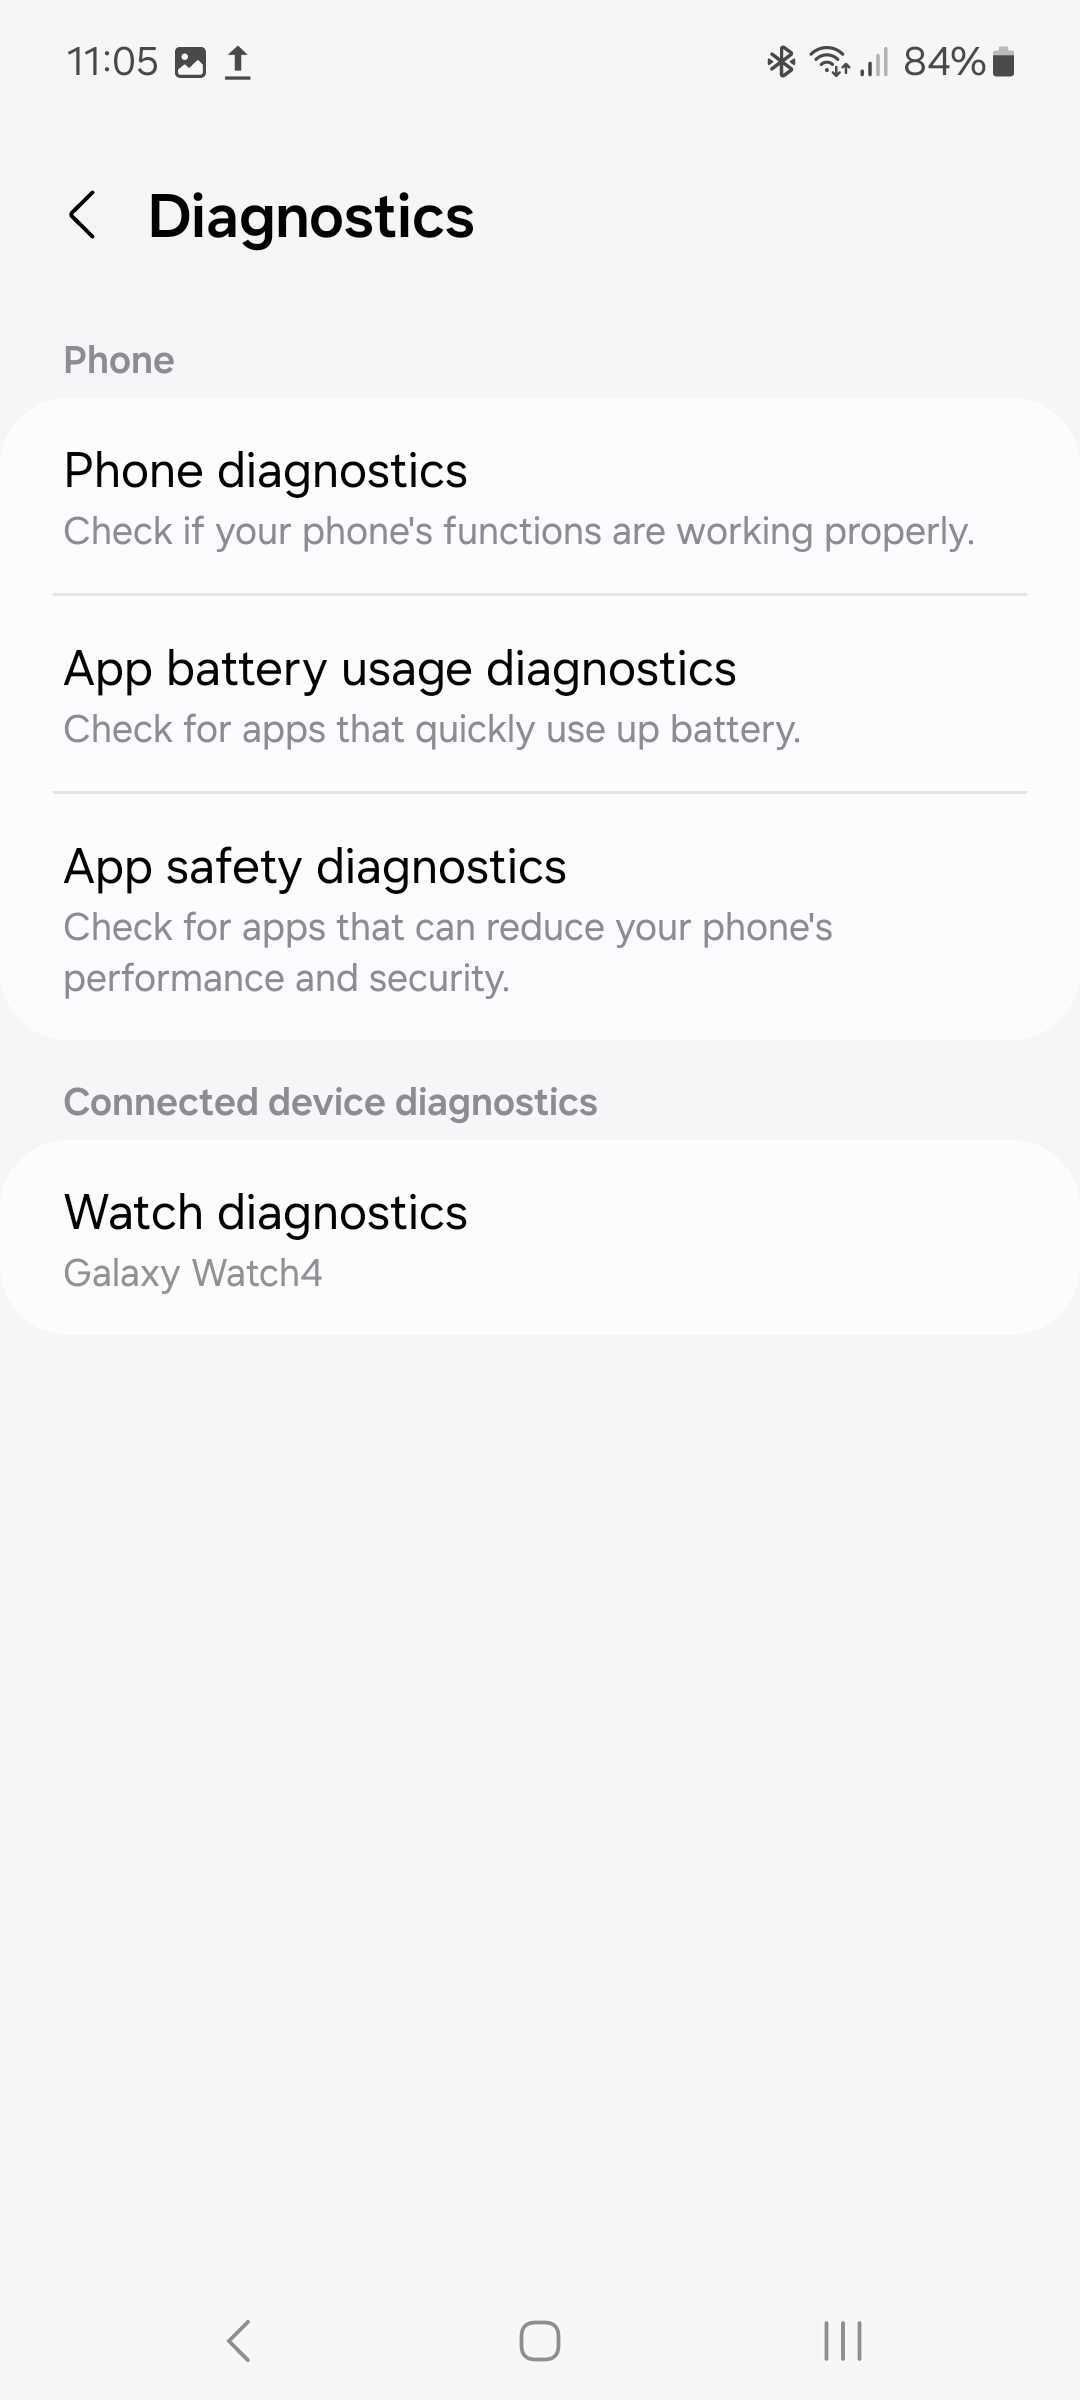 Página de diagnóstico nas configurações de cuidados com o dispositivo Samsung com uma lista de opções